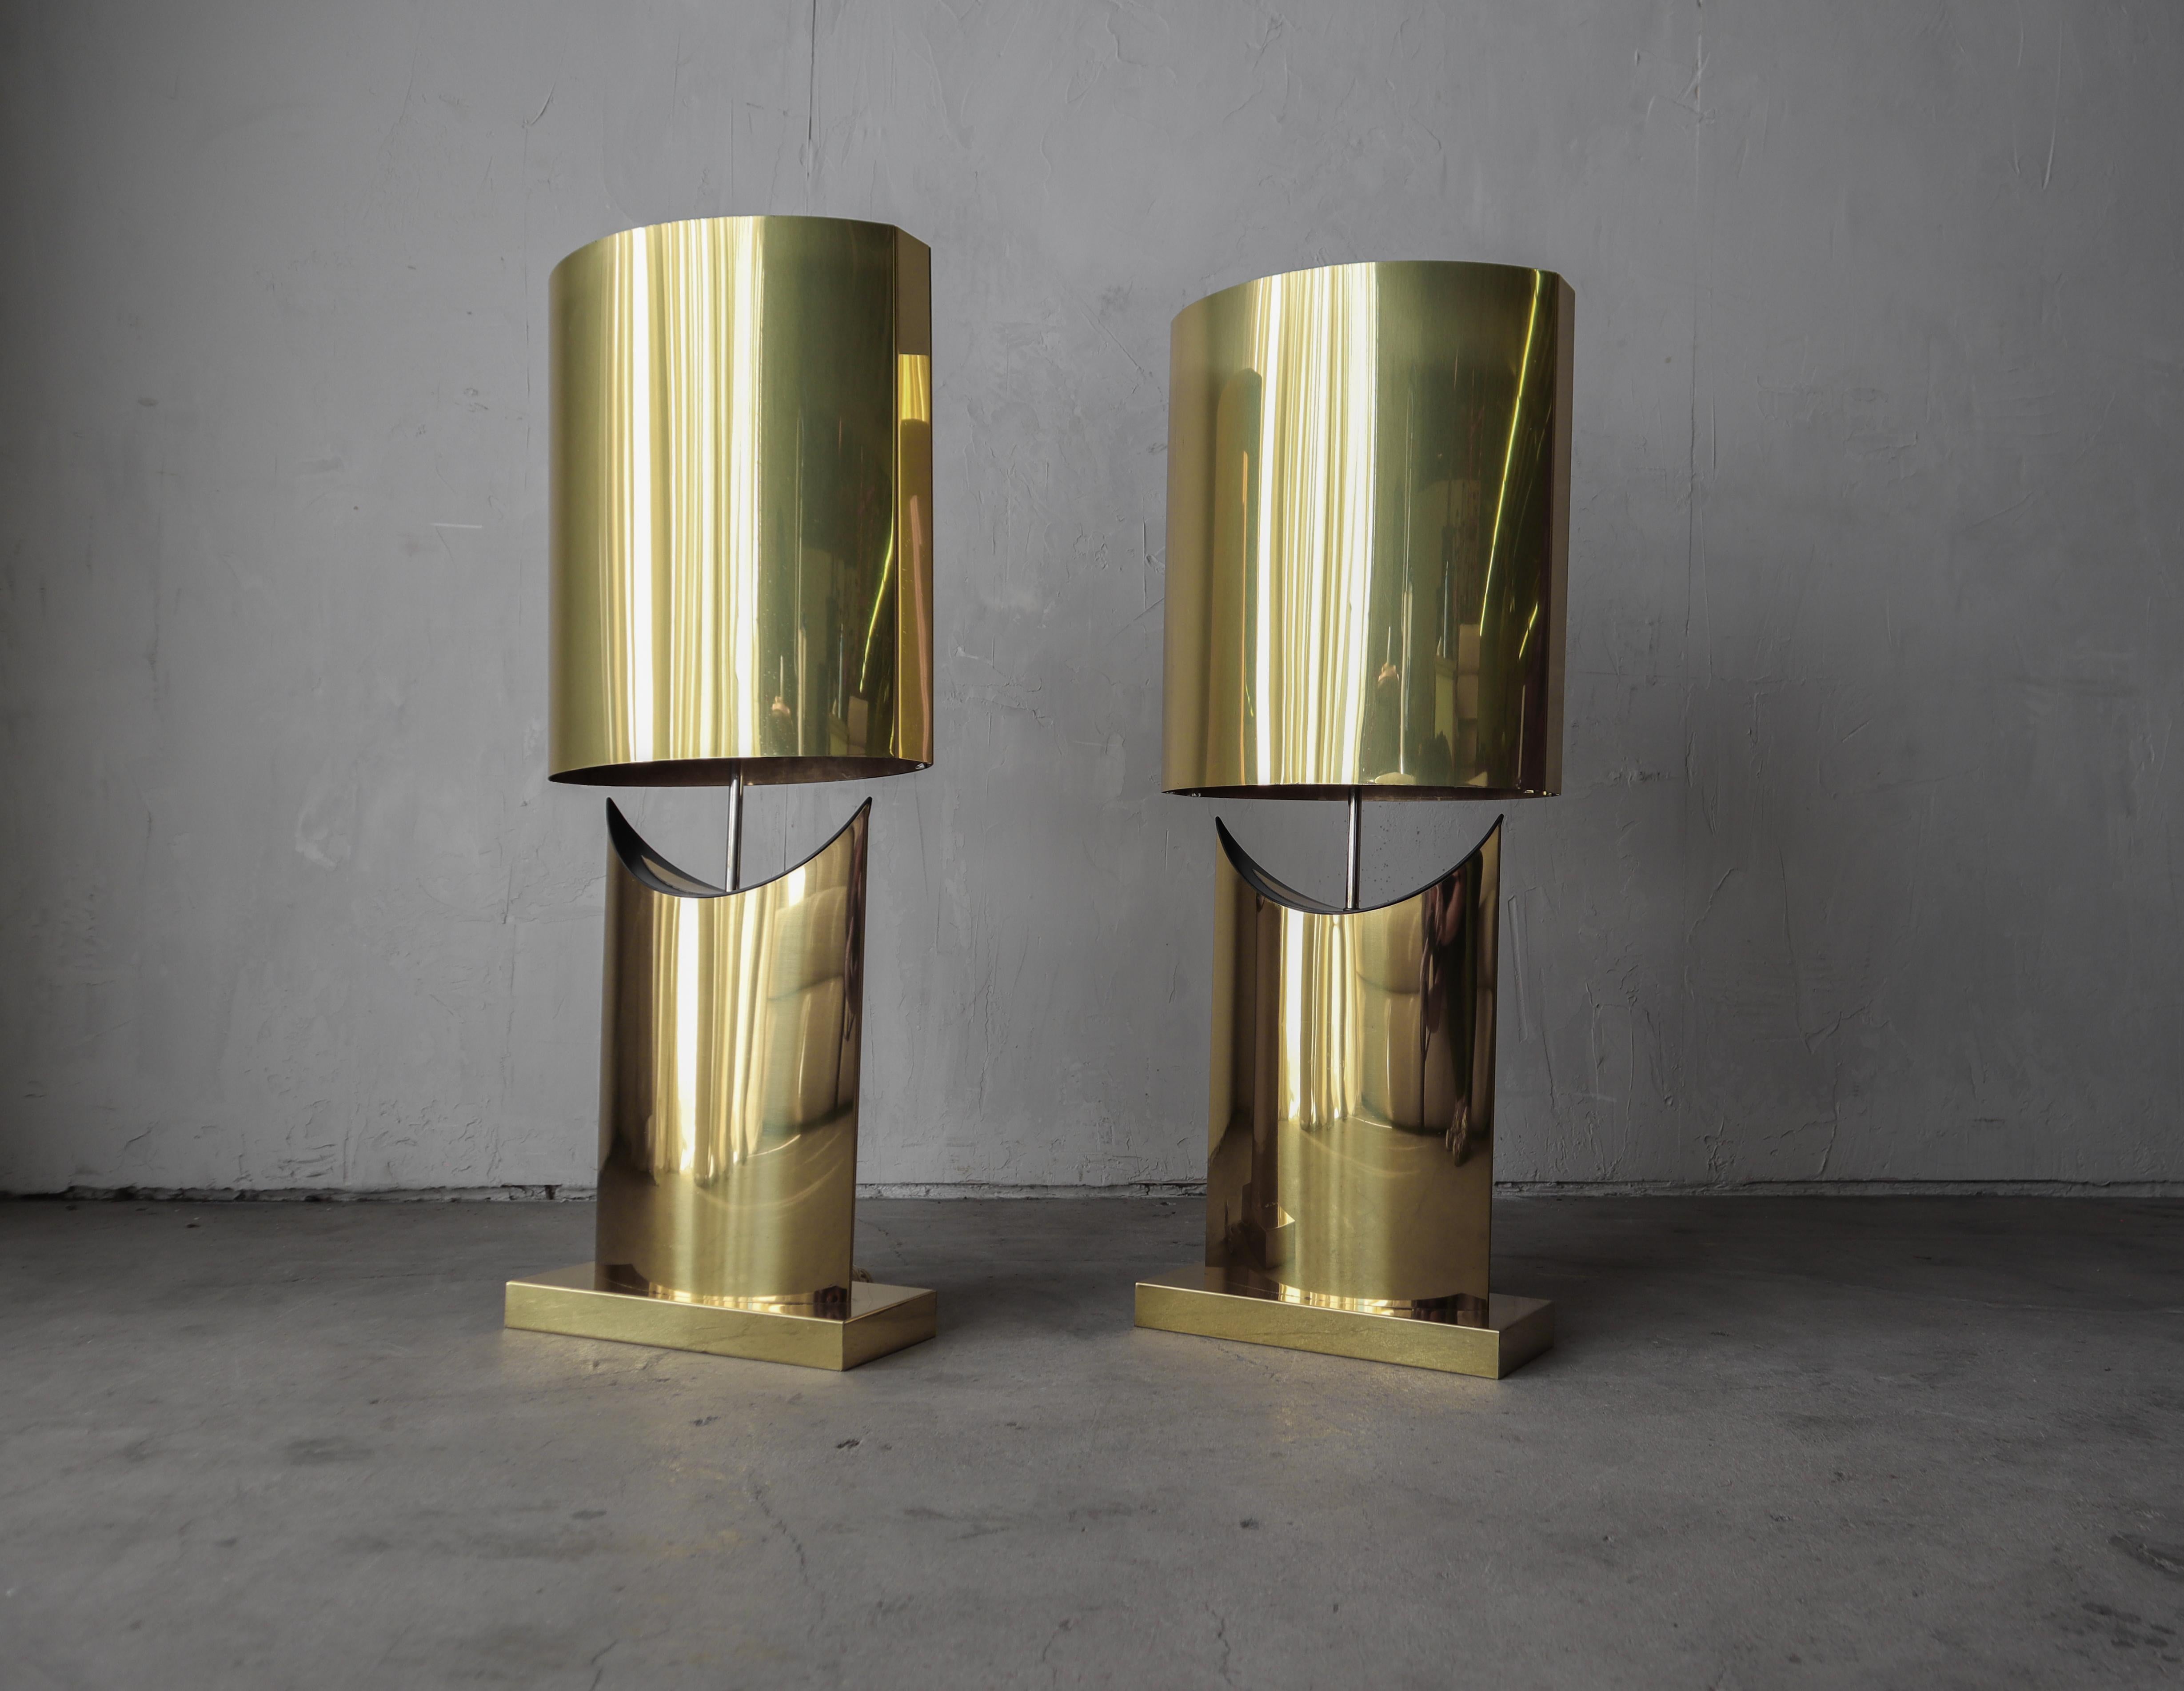 Absolument magnifique et très grande paire de lampes de table en laiton de Curtis Jere.  Ces lampes attirent l'attention en servant à la fois la forme et la fonction avec leur forme sculpturale et leur couleur chaude de laiton.

Les lampes sont en